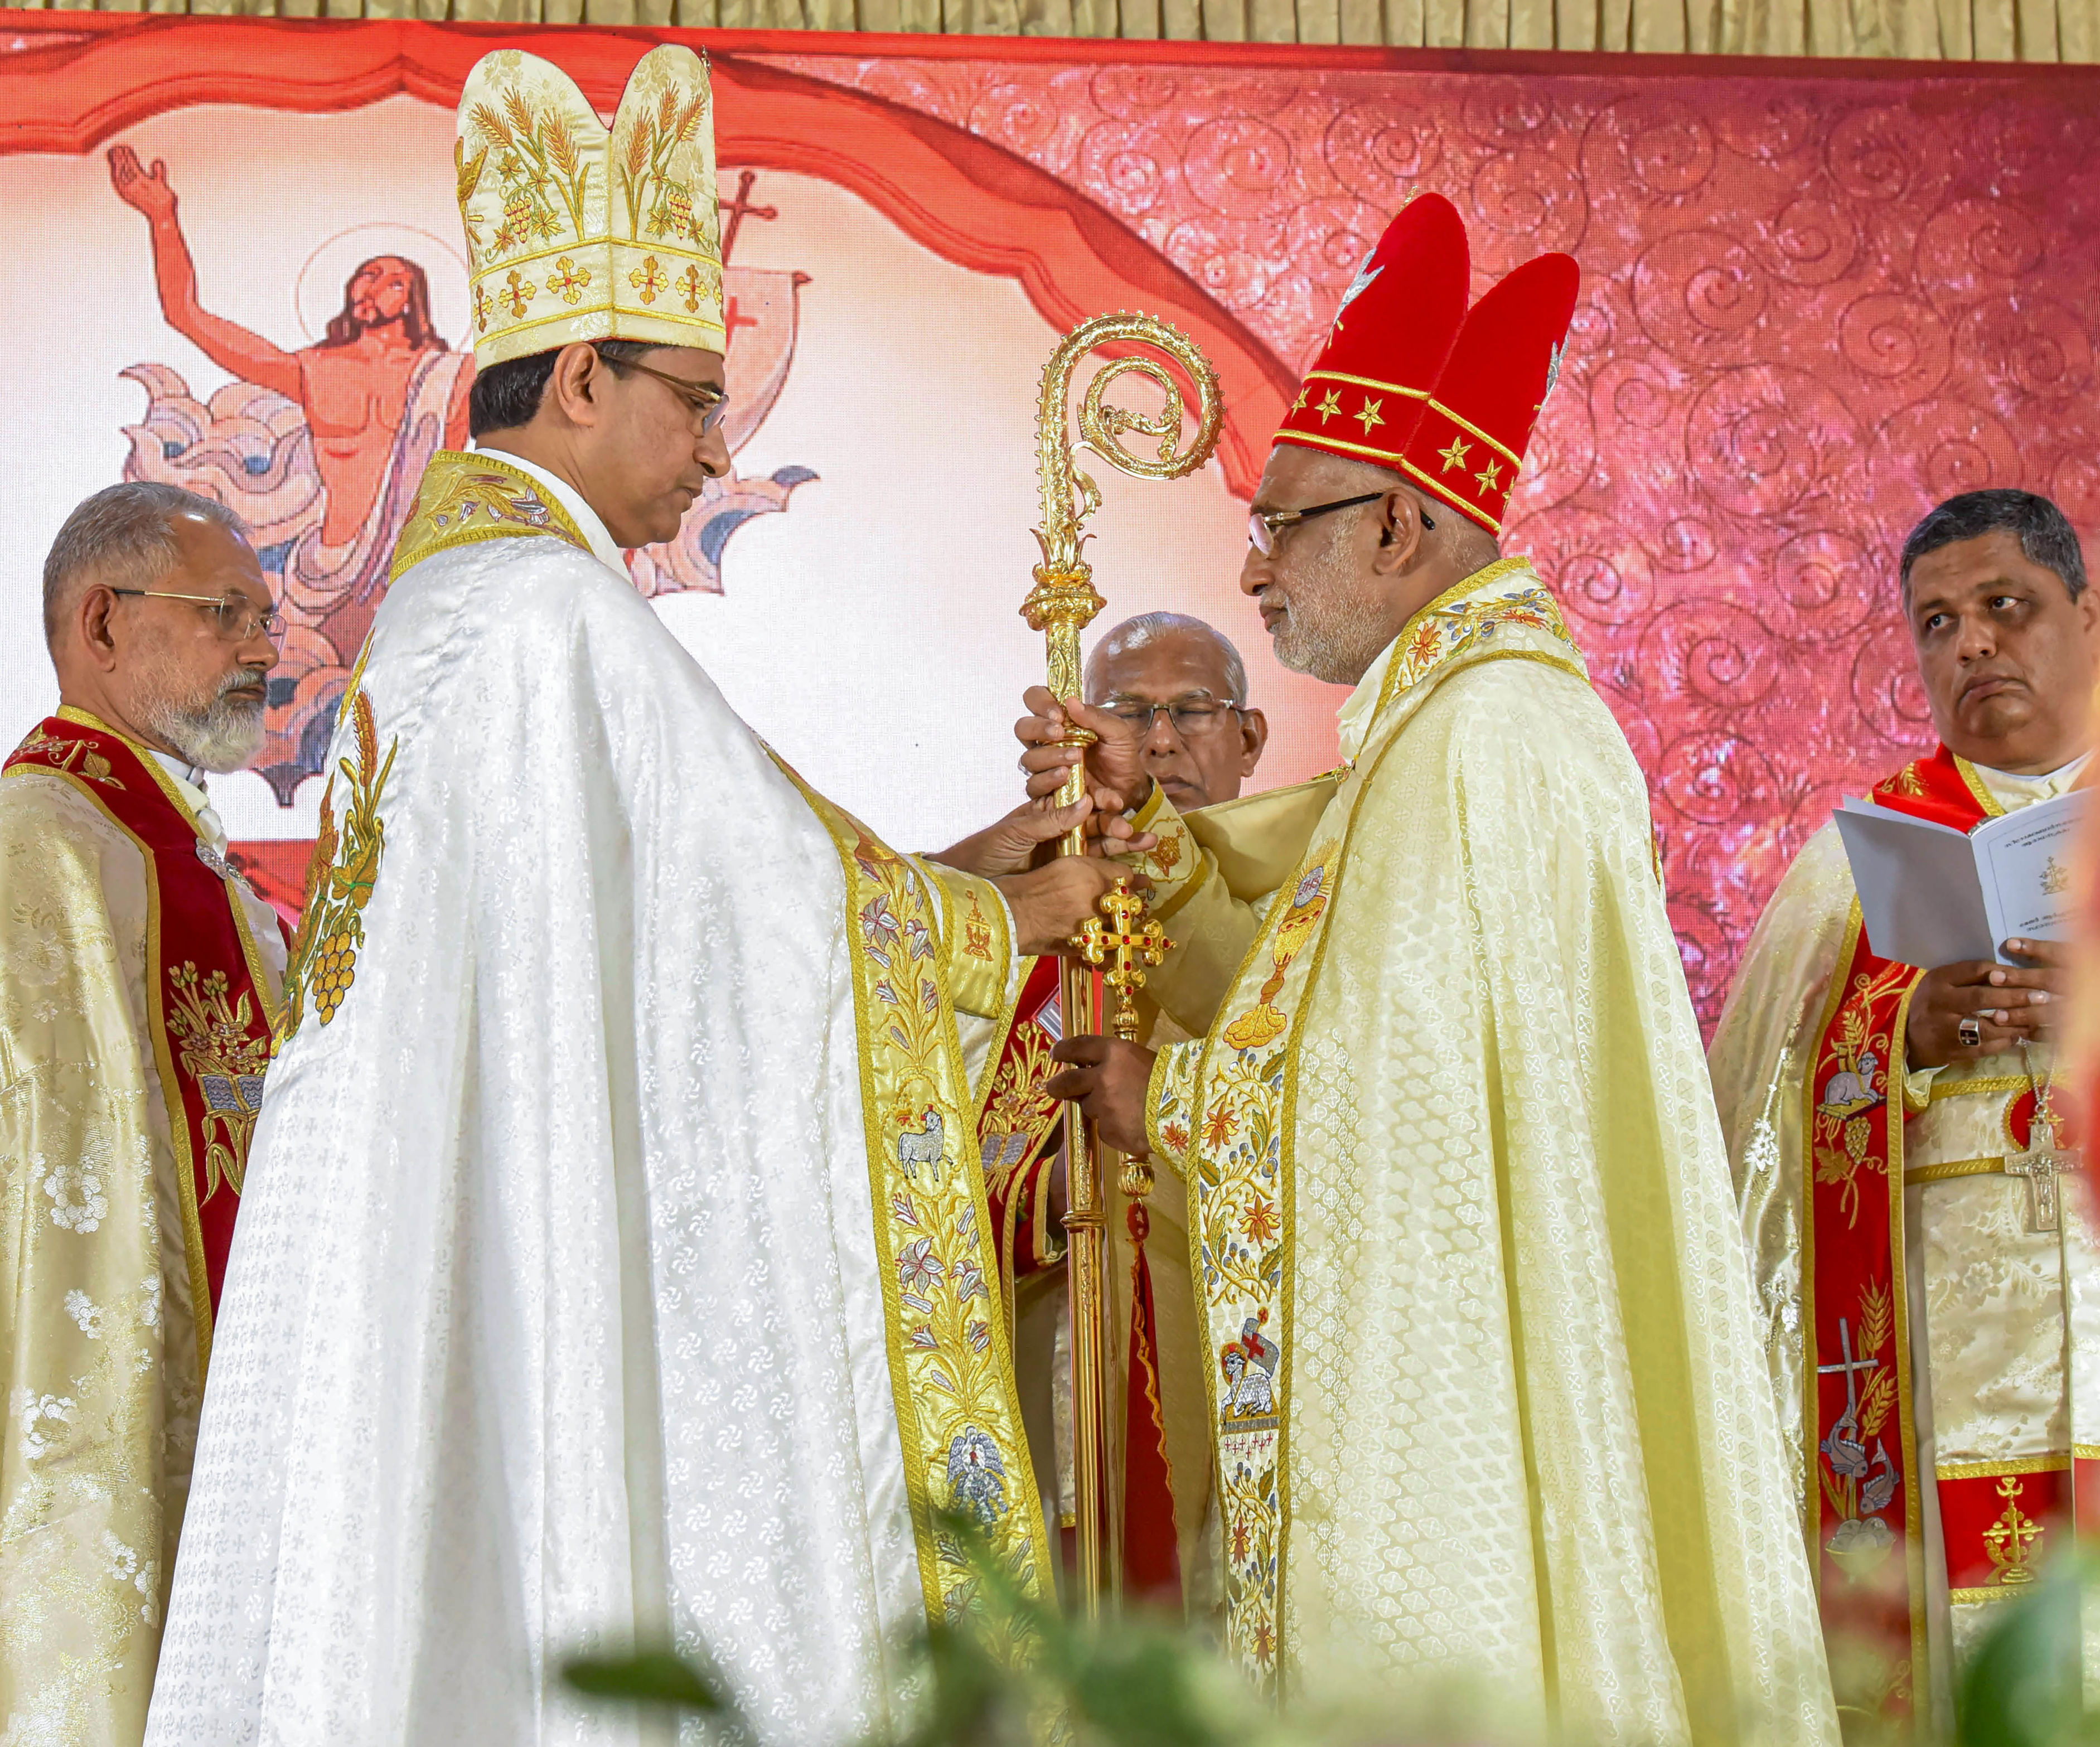 raphael thattil installed as major archbishop of syro-malabar church